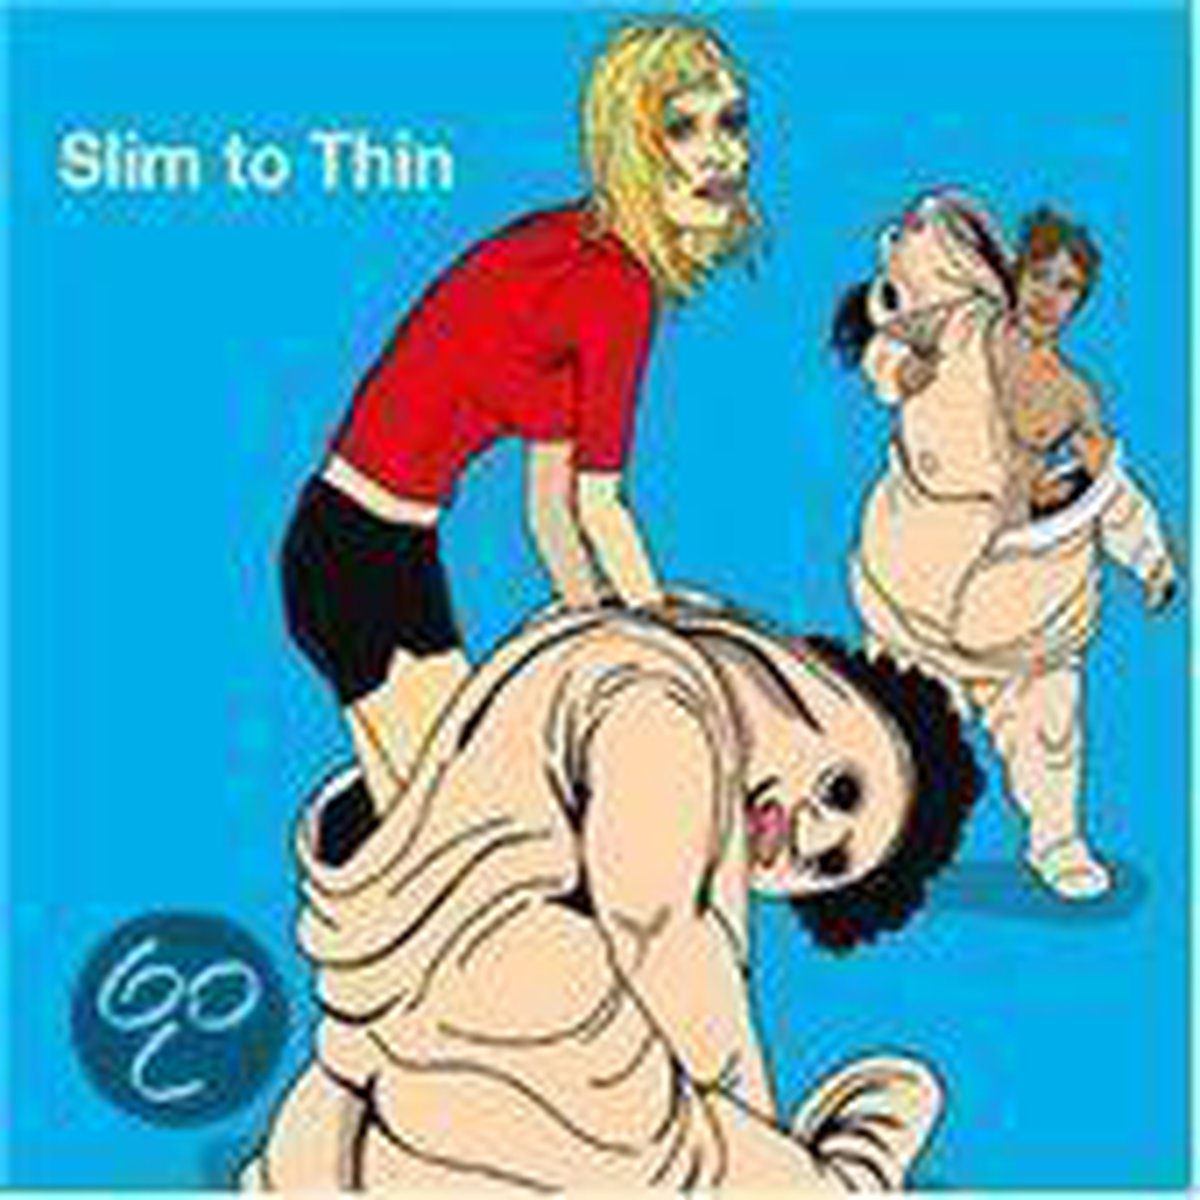 Slim to Thin